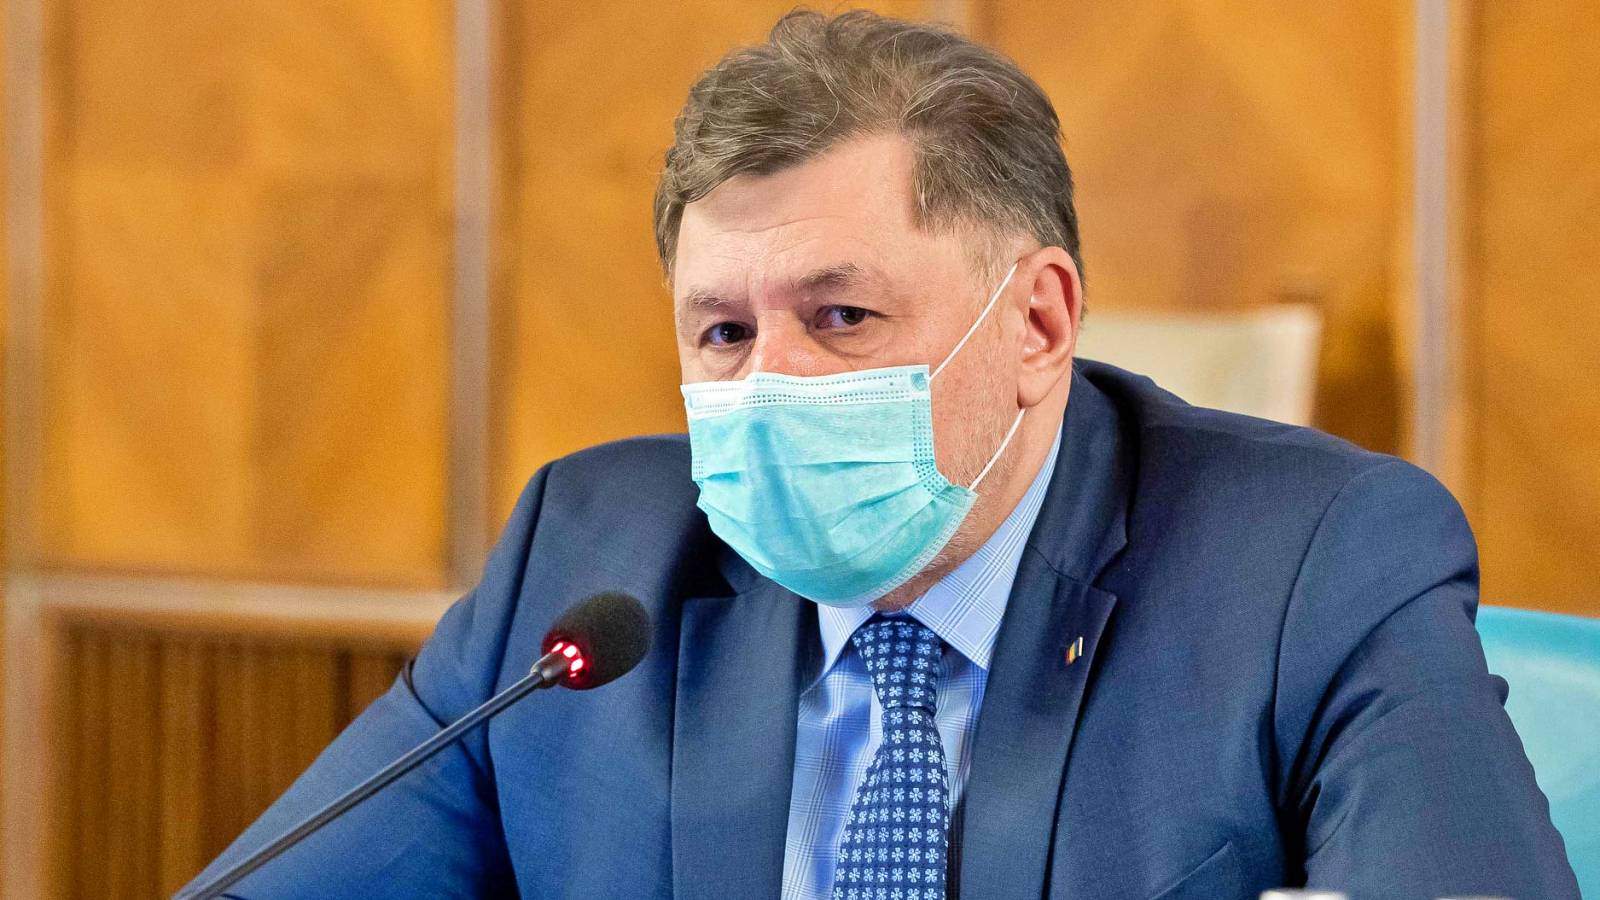 Sundhedsminister SIDSTE GANG Information bragt til rumænernes øjeblikkelige opmærksomhed